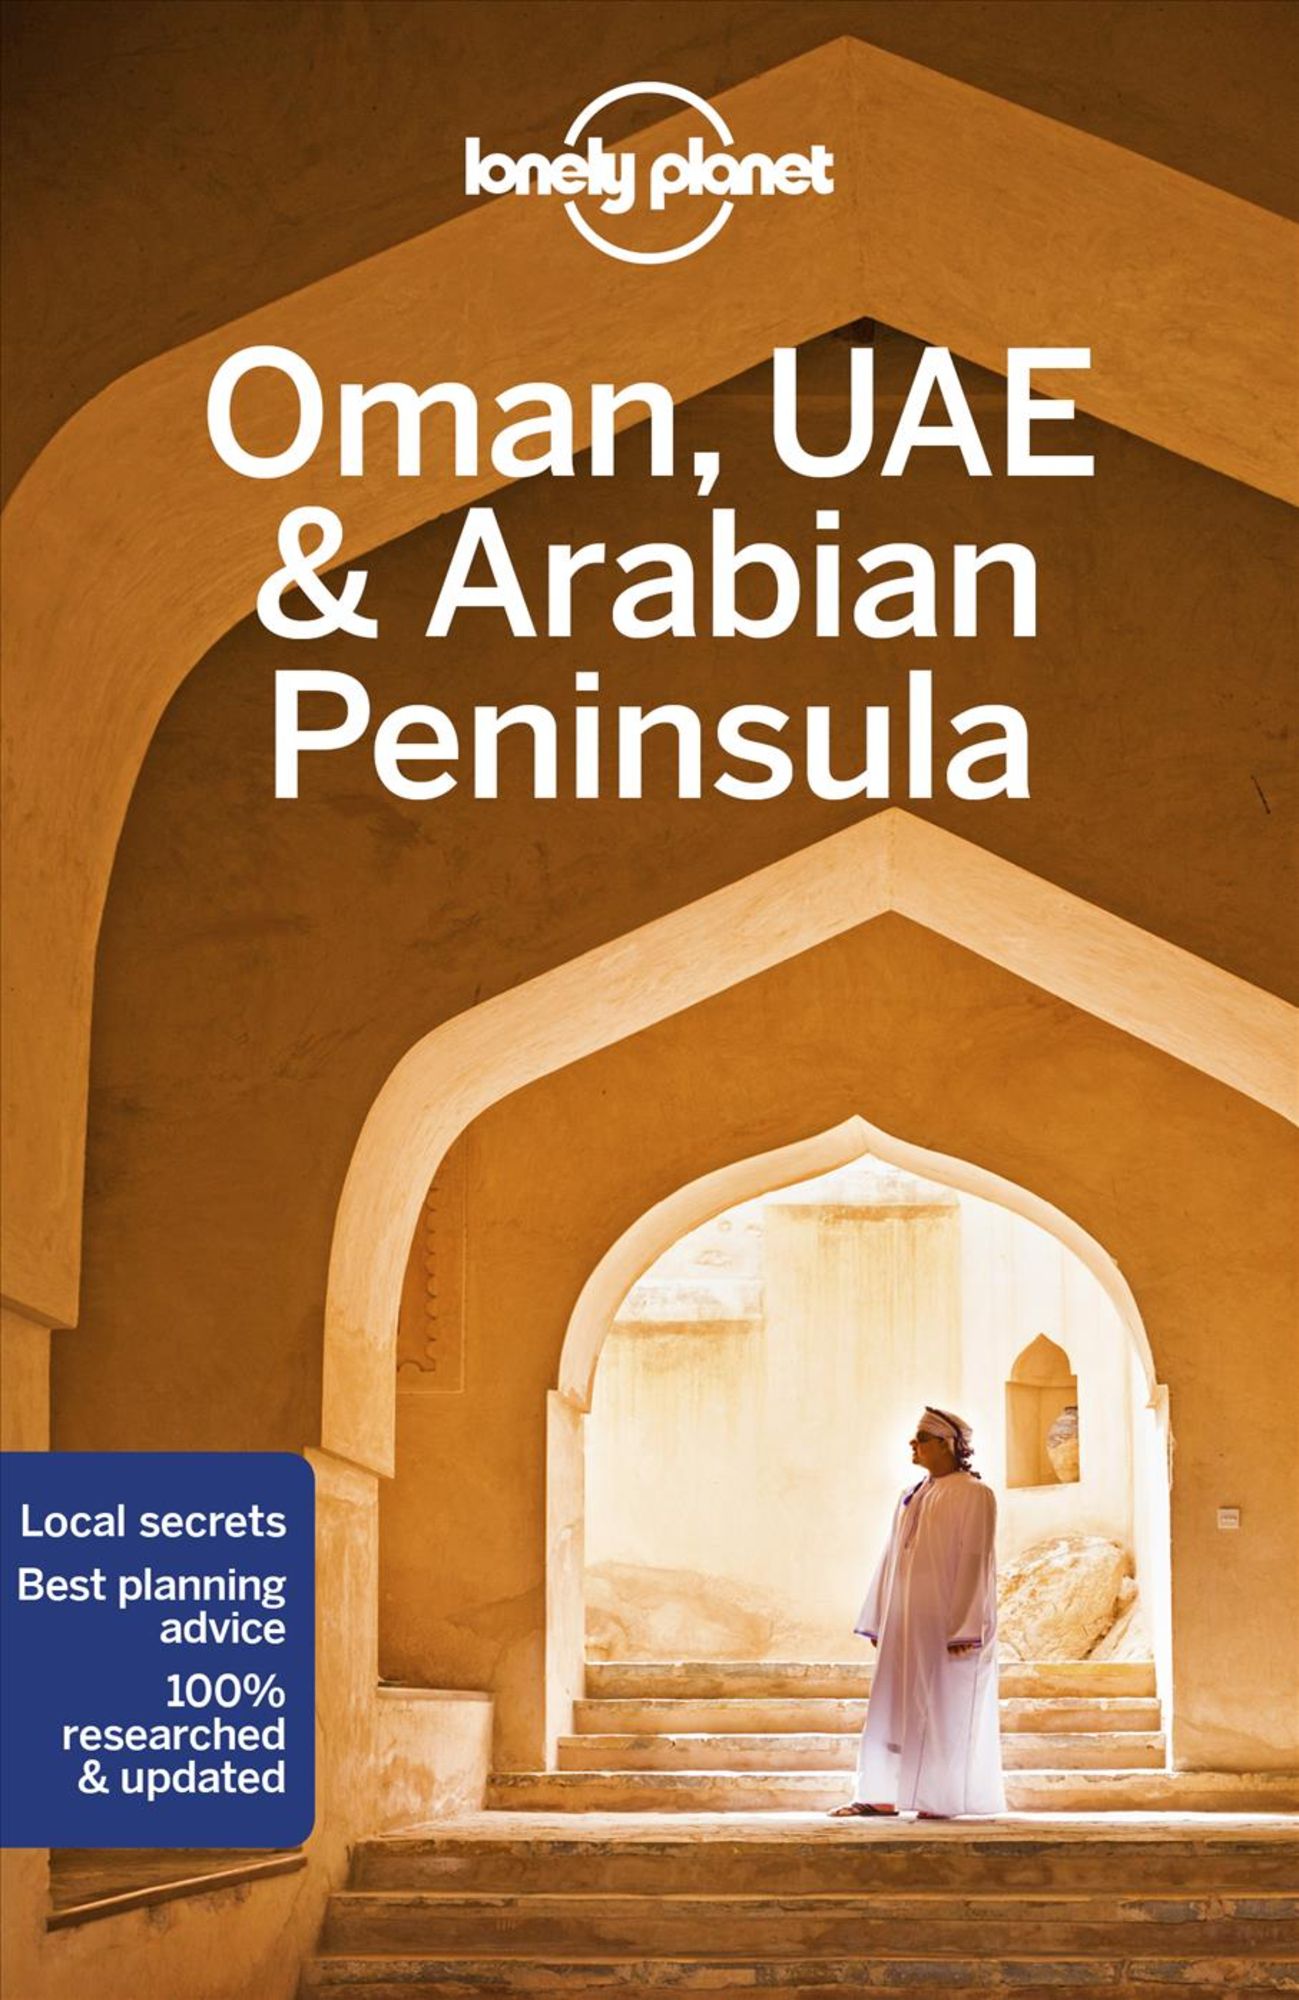 Lonely'　'Taschenbuch'　von　Oman,　'978-1-78657-486-2'　Peninsula'　UAE　Arabian　'Planet